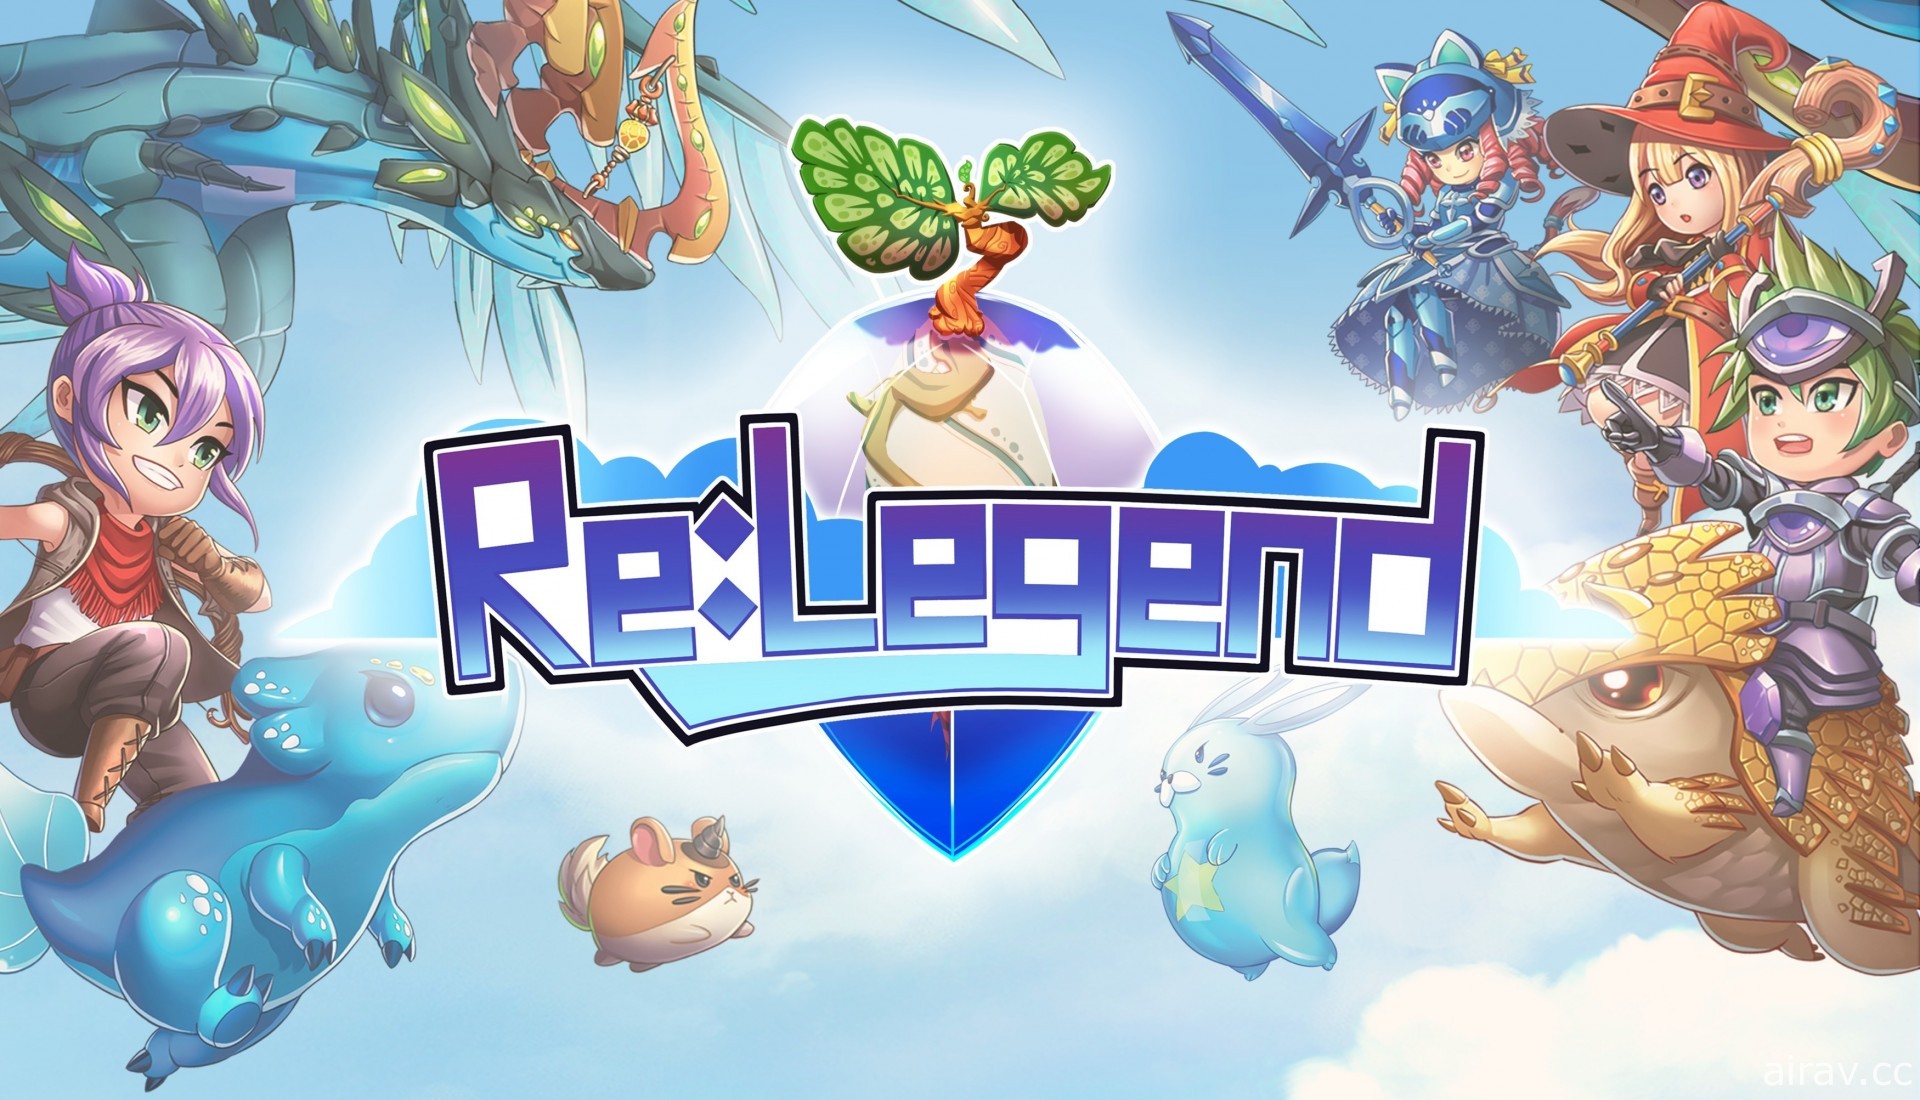 養成系 JRPG 遊戲《Re:Legend》2021 春季跨平台上市